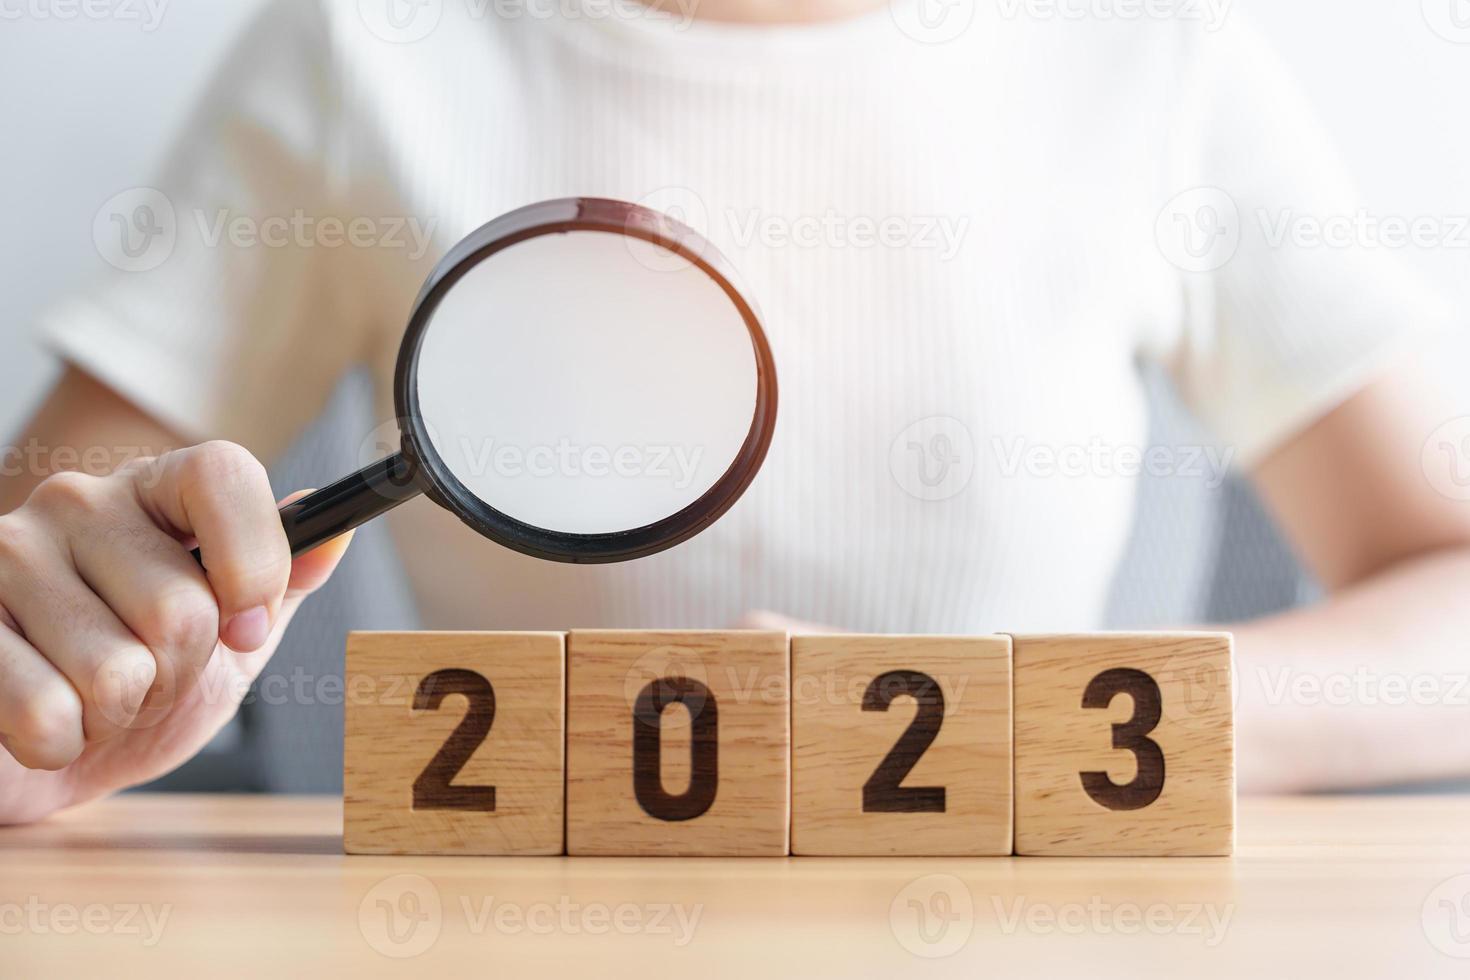 Bloco 2023 com lupa. seo, search engine optimization, contratação, publicidade, ideia, estratégia, marketing, palavra-chave, conteúdo e conceitos de início de ano novo foto